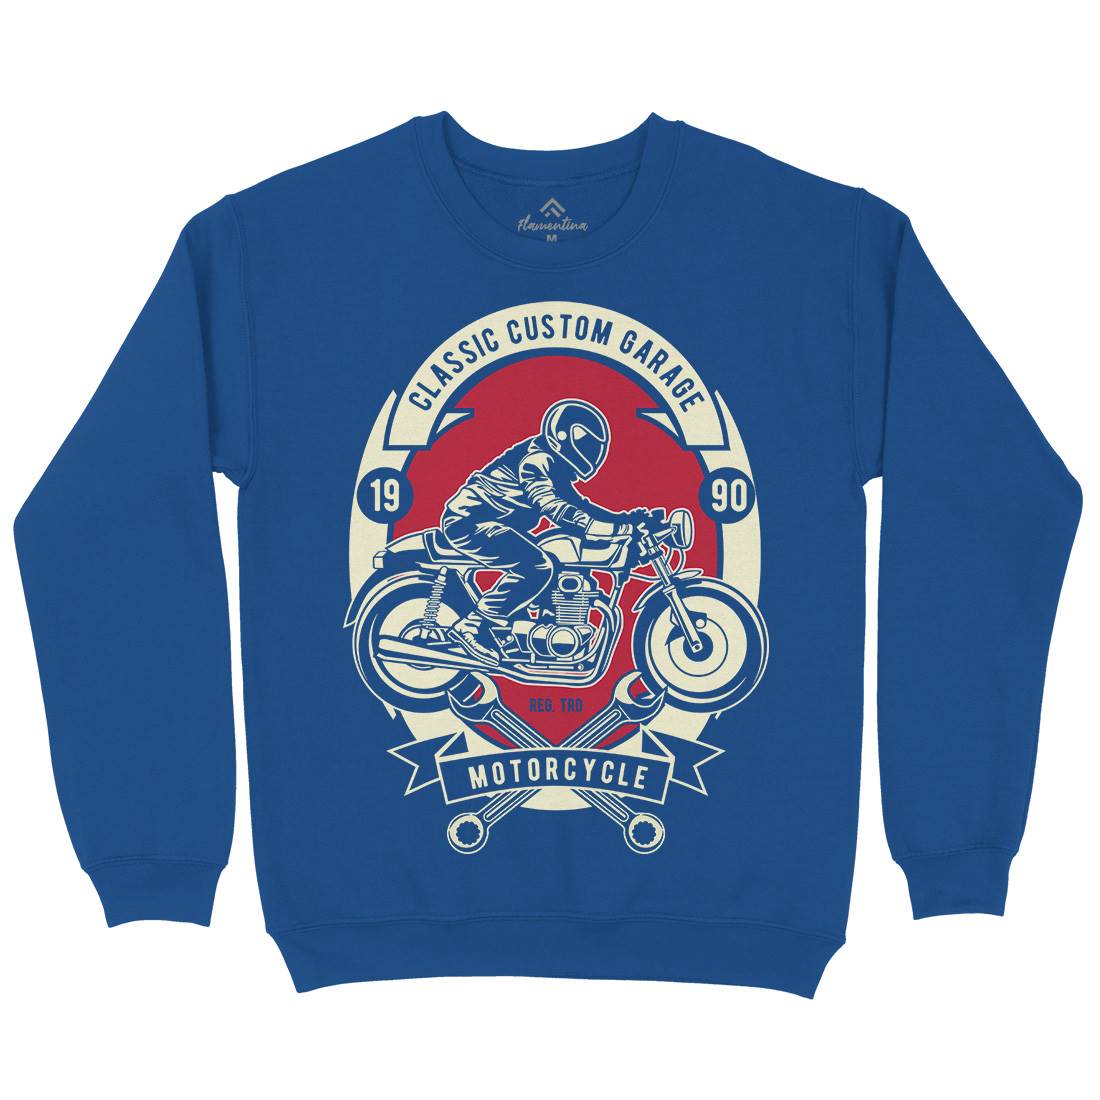 Classic Custom Garage Kids Crew Neck Sweatshirt Motorcycles D519